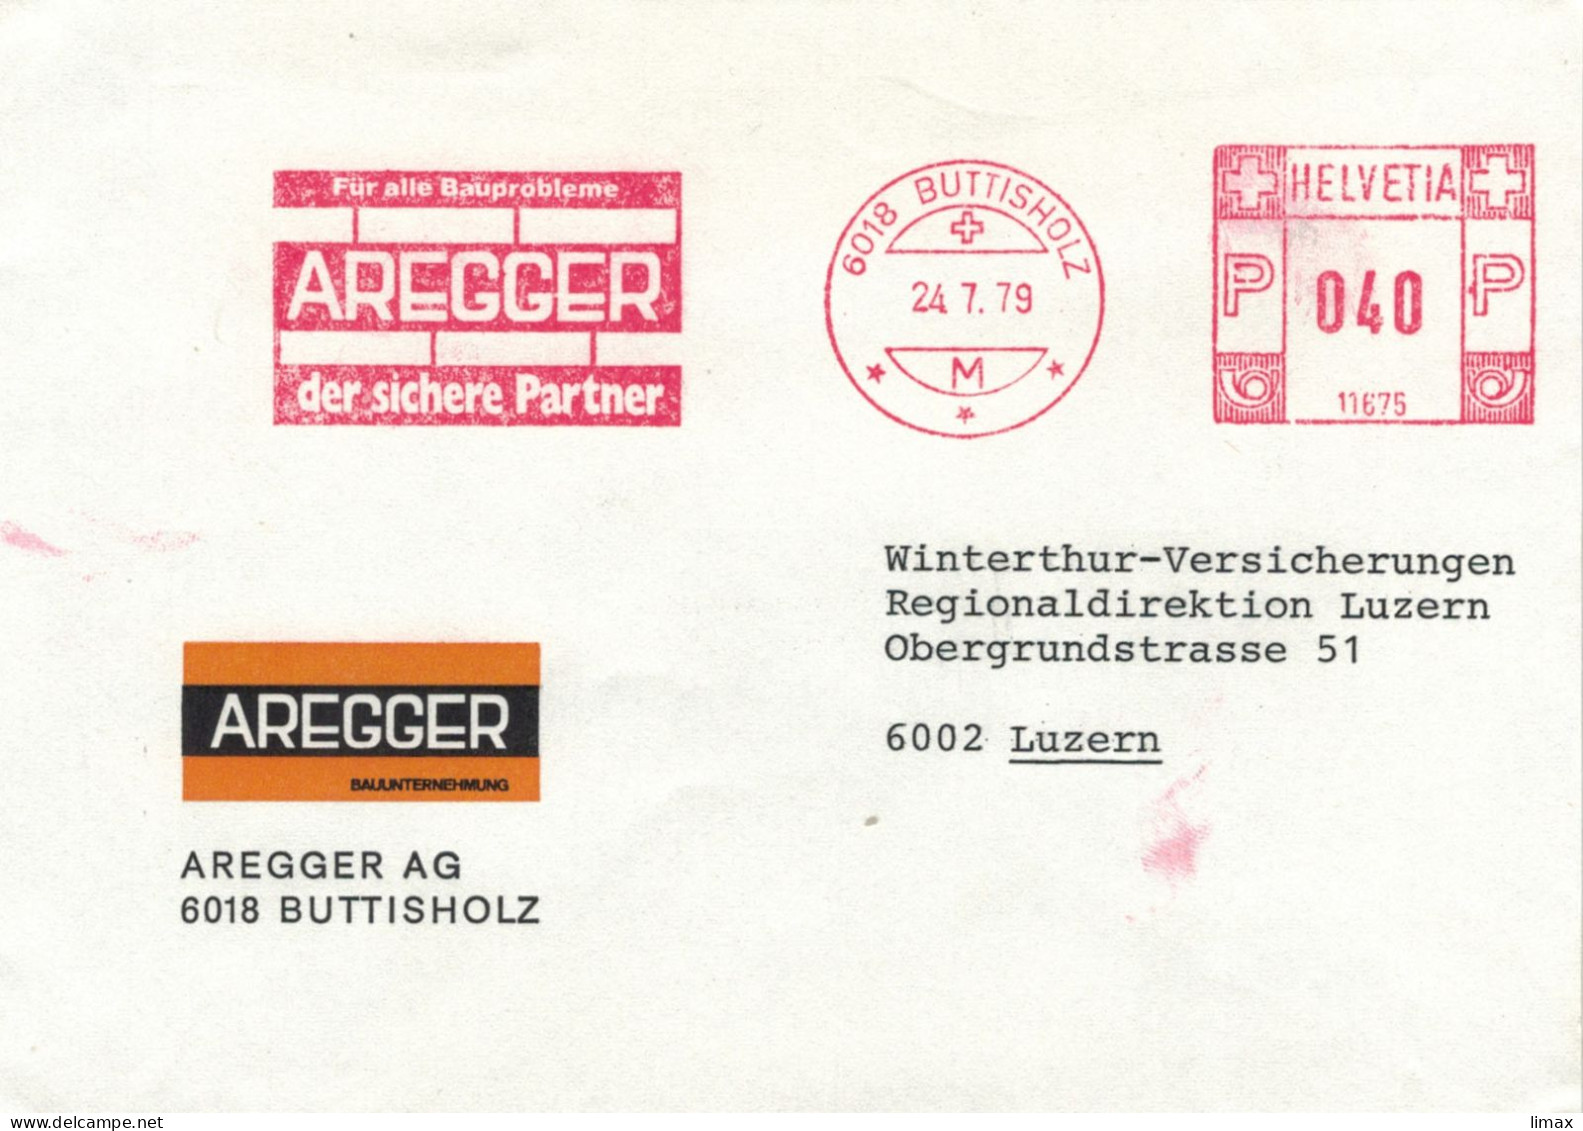 Aregger 6018 Buttisholz 1979 - Der Sichere Partner Für Alle Bauprobleme Stempel 11675 > Luzern - Postage Meters